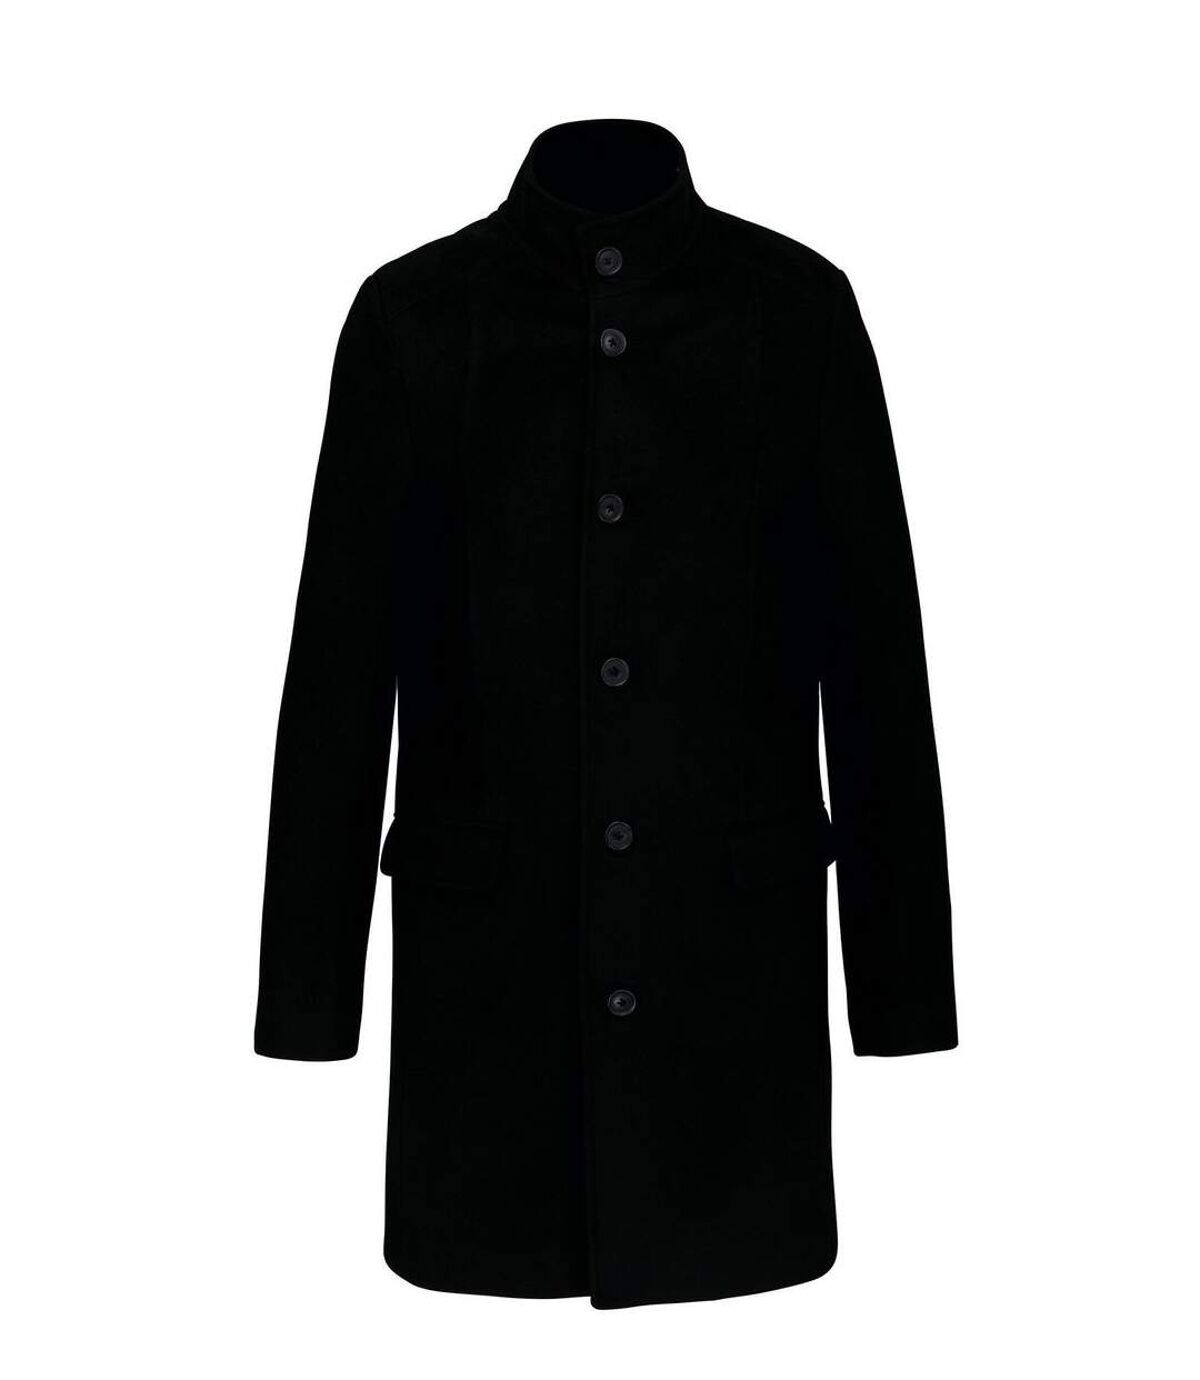 Manteau business premium homme - K6140 - noir